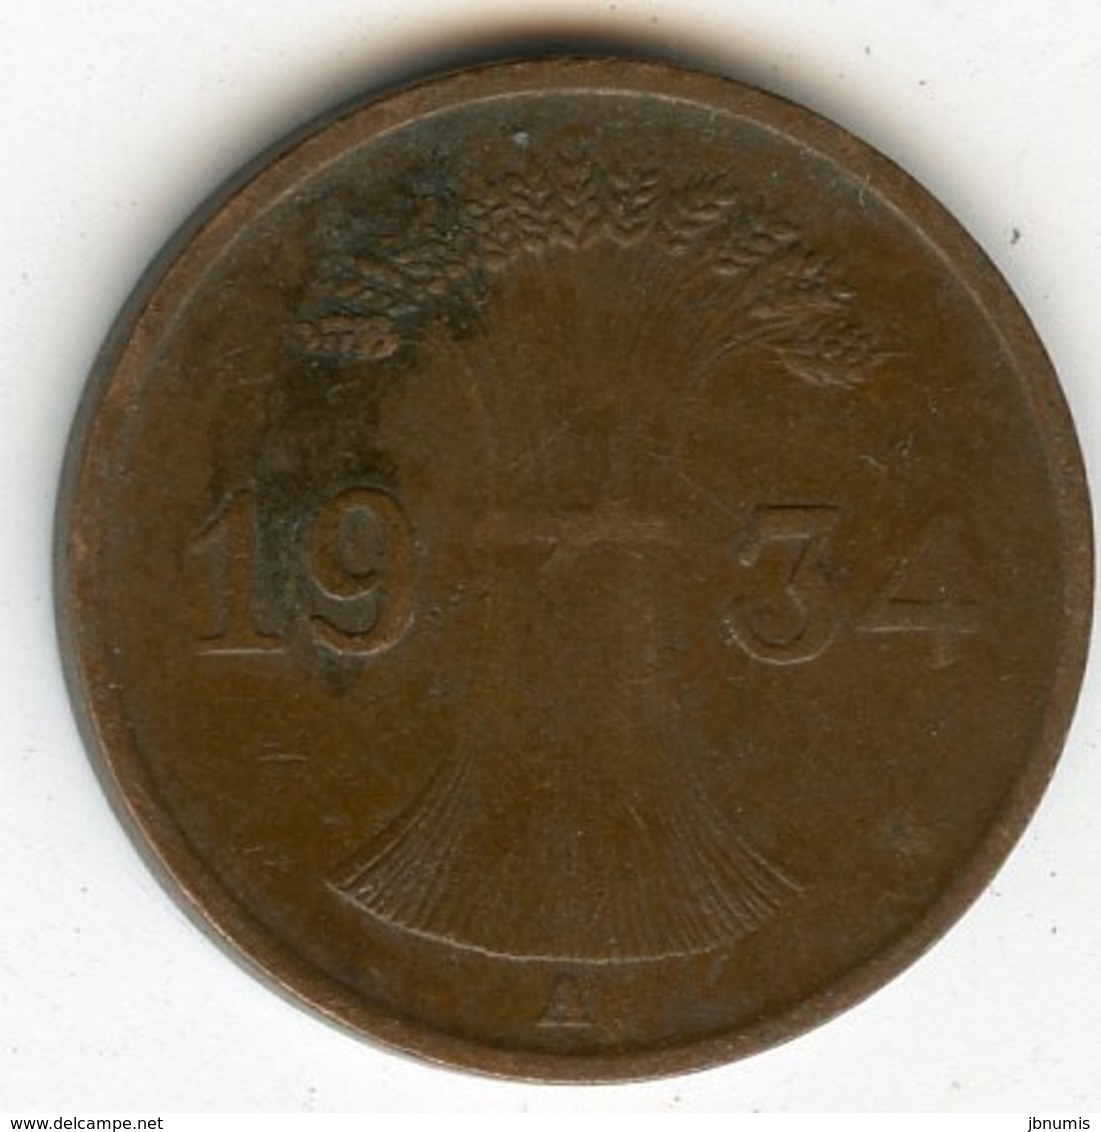 Allemagne Germany 1 Reichspfennig 1934 A J 313 KM 37 - 1 Reichspfennig